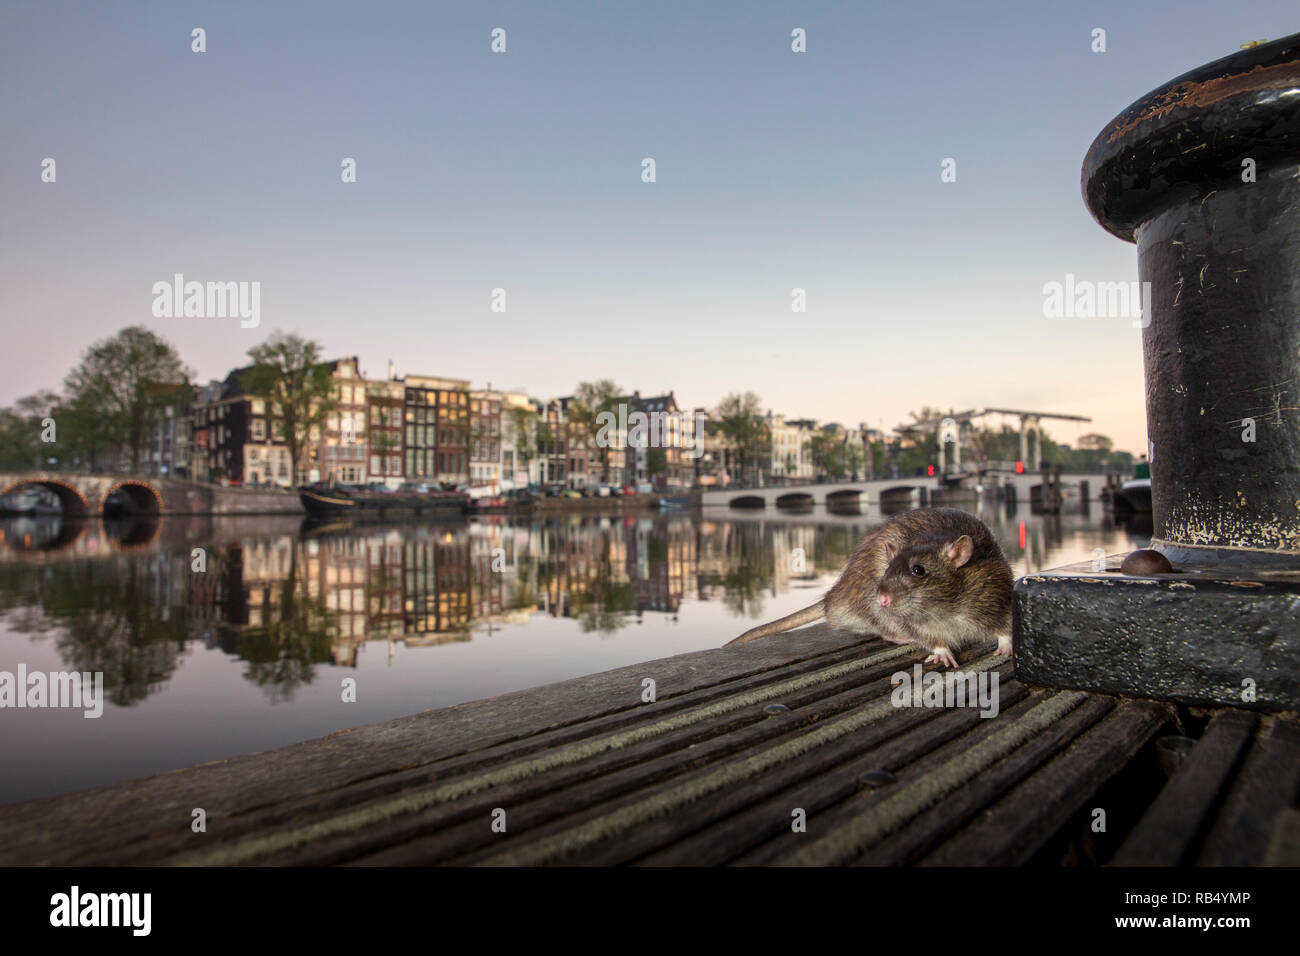 Les Pays-Bas, Amsterdam, le rat surmulot (Rattus norvegicus) sur jetée dans la rivière Amstel près de Skinny Bridge. Banque D'Images